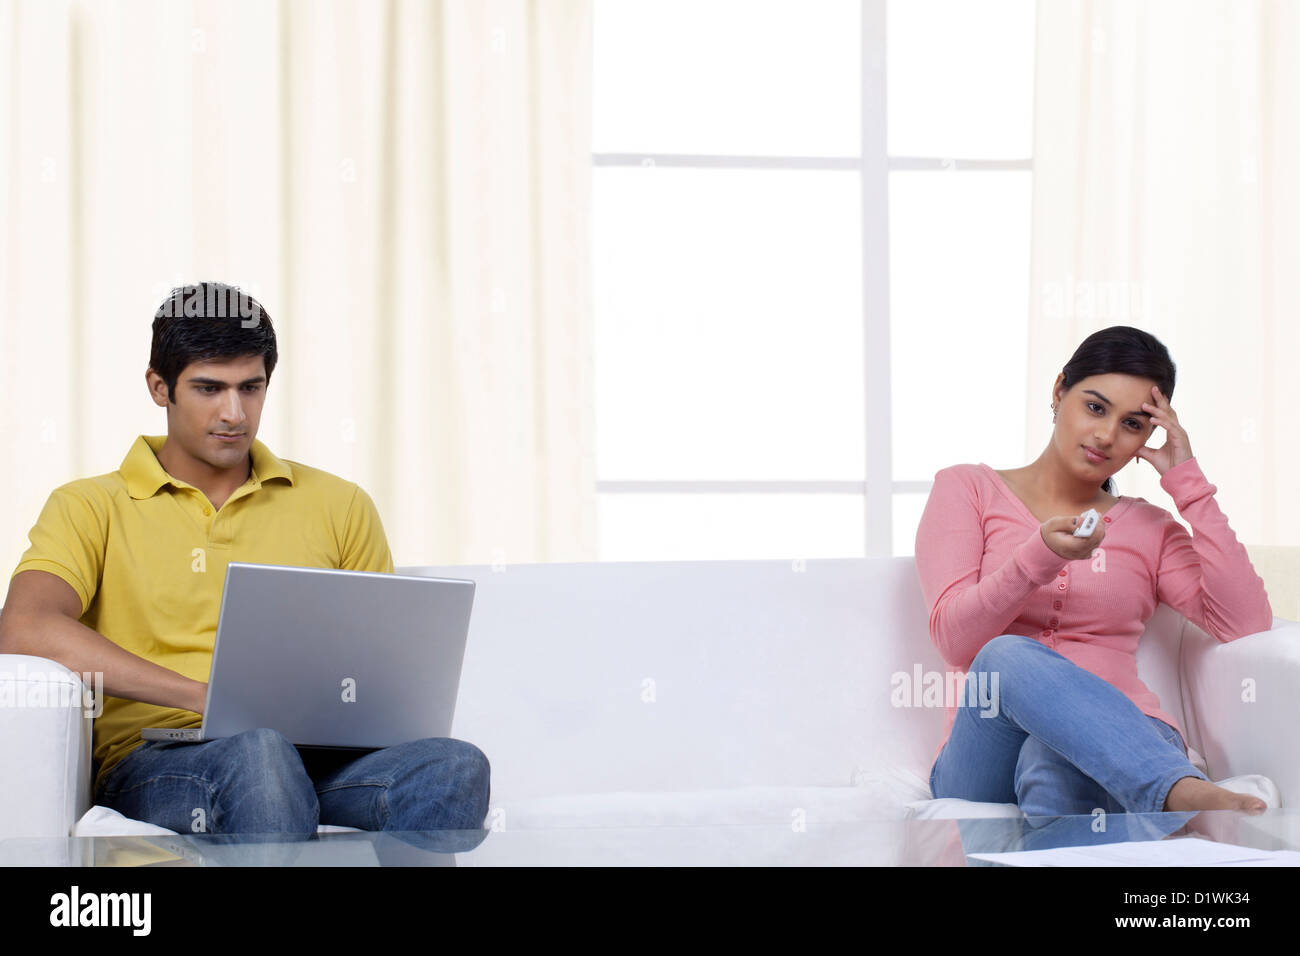 Junge Frau vor dem Fernseher während Mann auf laptop Stockfoto